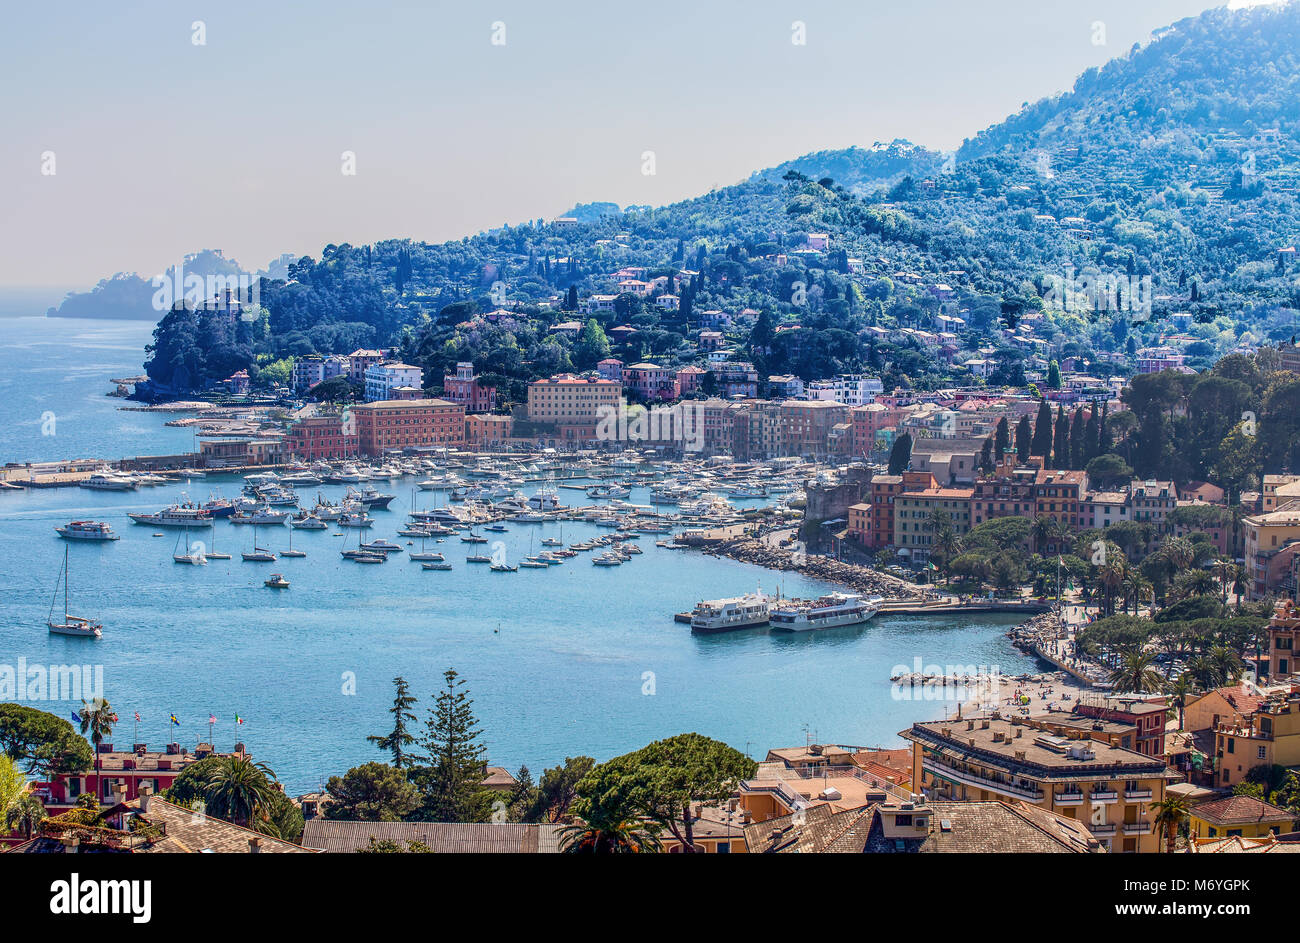 Luftaufnahme von Santa Margherita Ligure, Genua, den Hafen, touristischen Ort in der Ligurischen Riviera, Mittelmeer, Italien Stockfoto